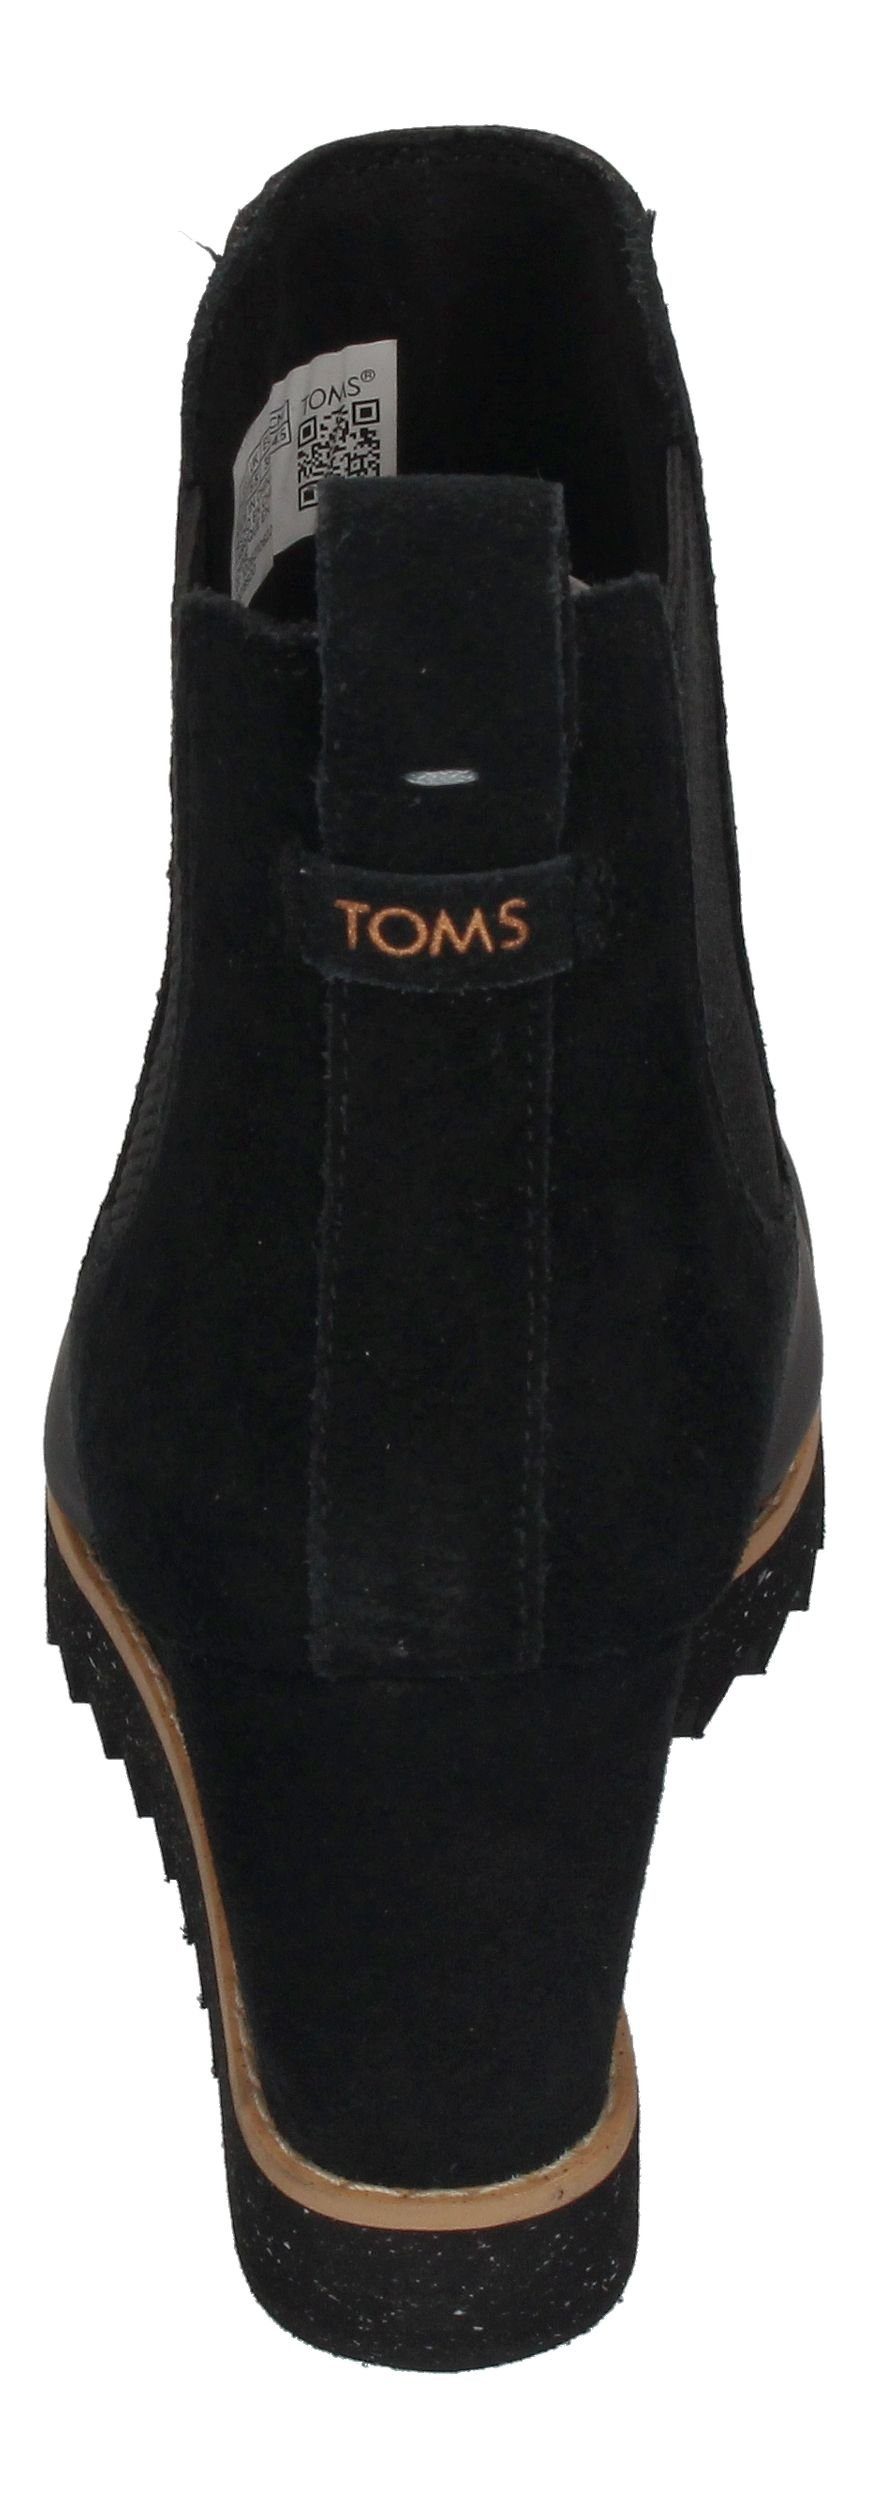 TOMS MADDIE 10018920 Black Stiefelette